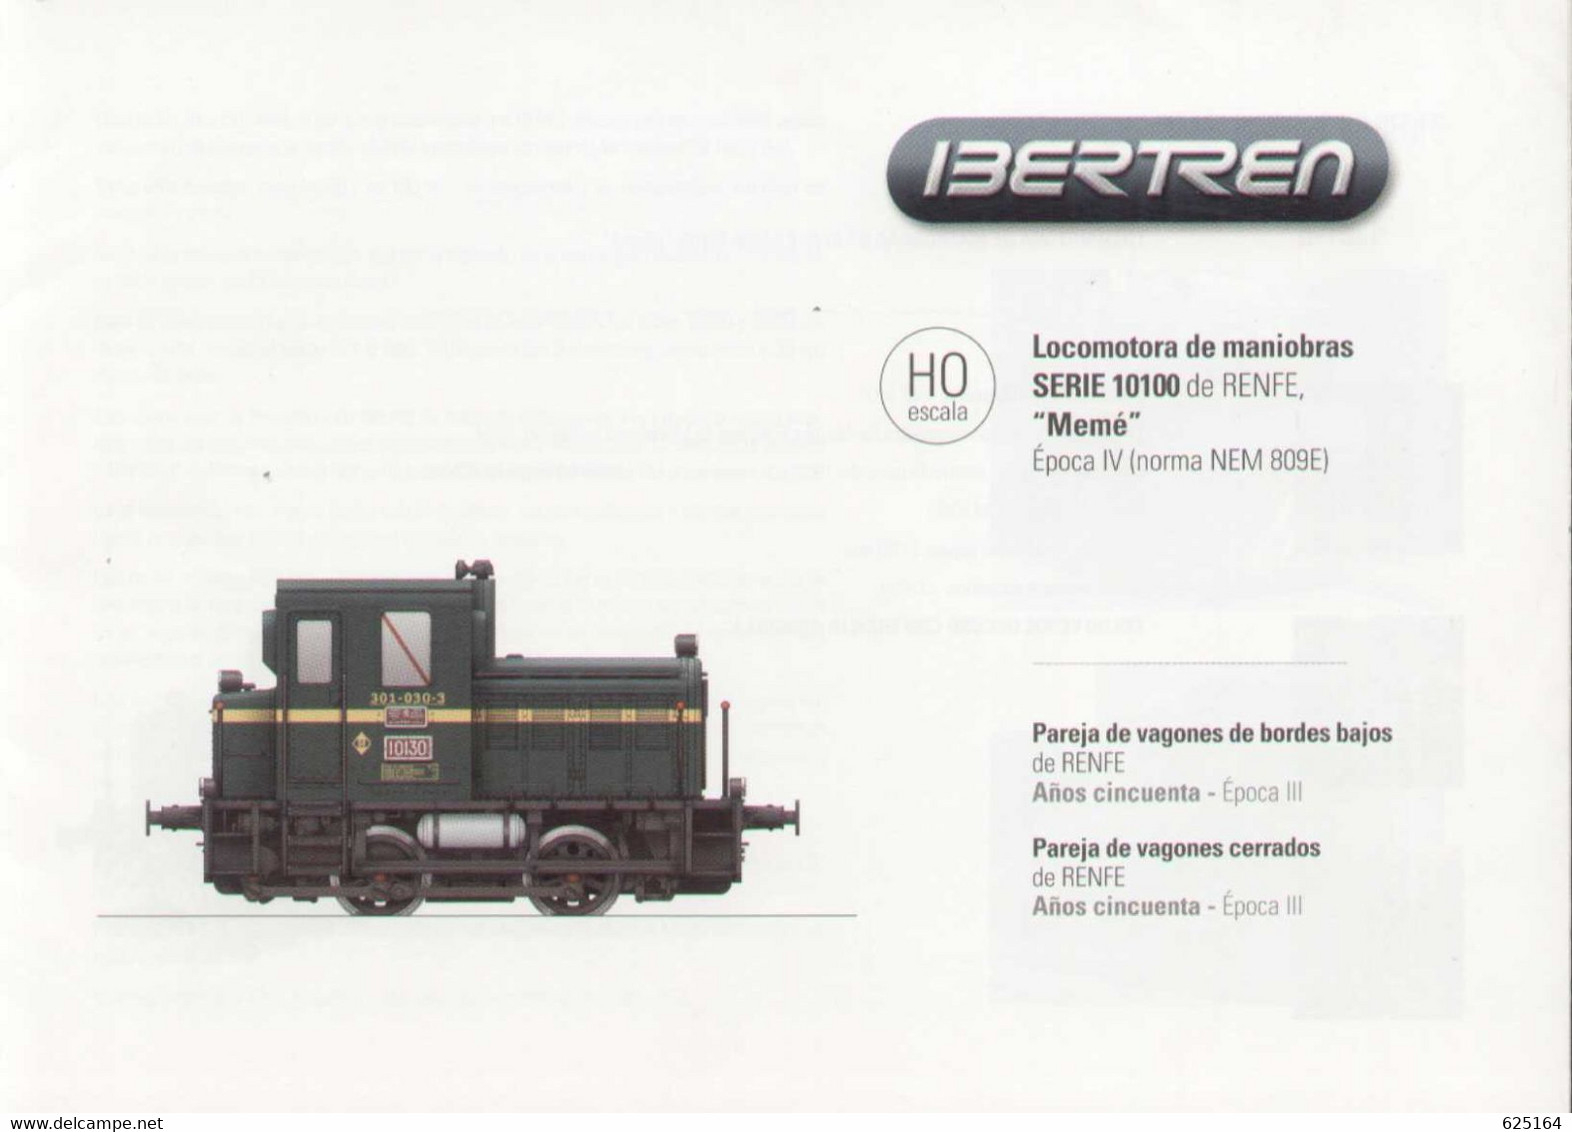 Catalogue IBERTREN 2007 Hoja De Información RENFE 10100 "Memé" HO -en Suédois - Non Classés